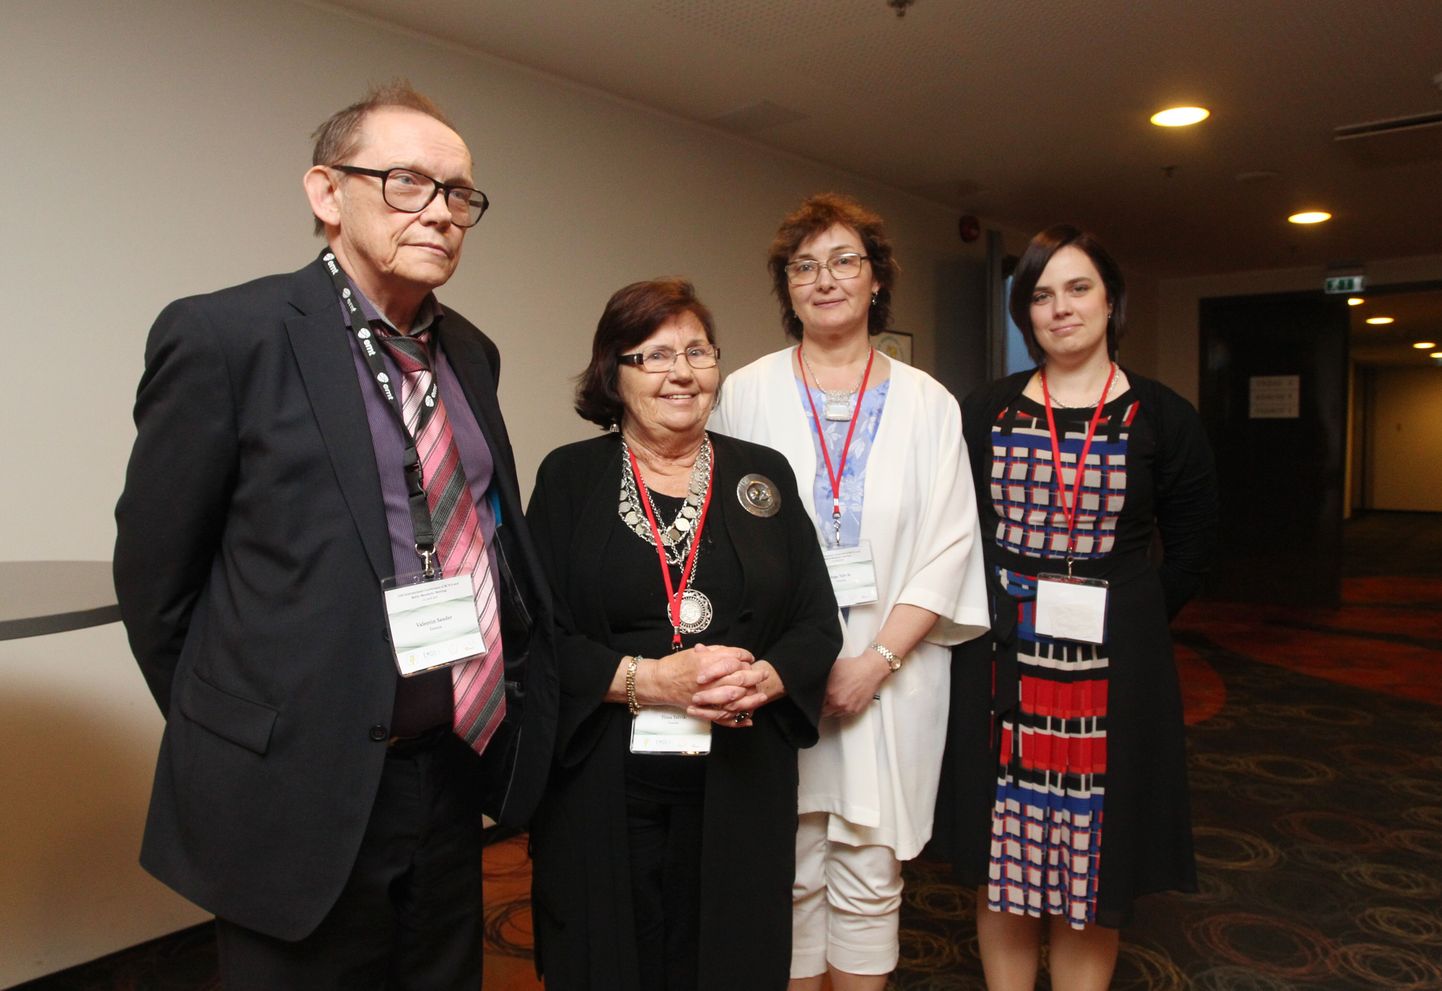 Lasteneuroloogid Valentin Sander, Tiina Talvik, Inga Talvik ja Klari Noormets täna pärast konverentsi avamist Dorpati keskuses.